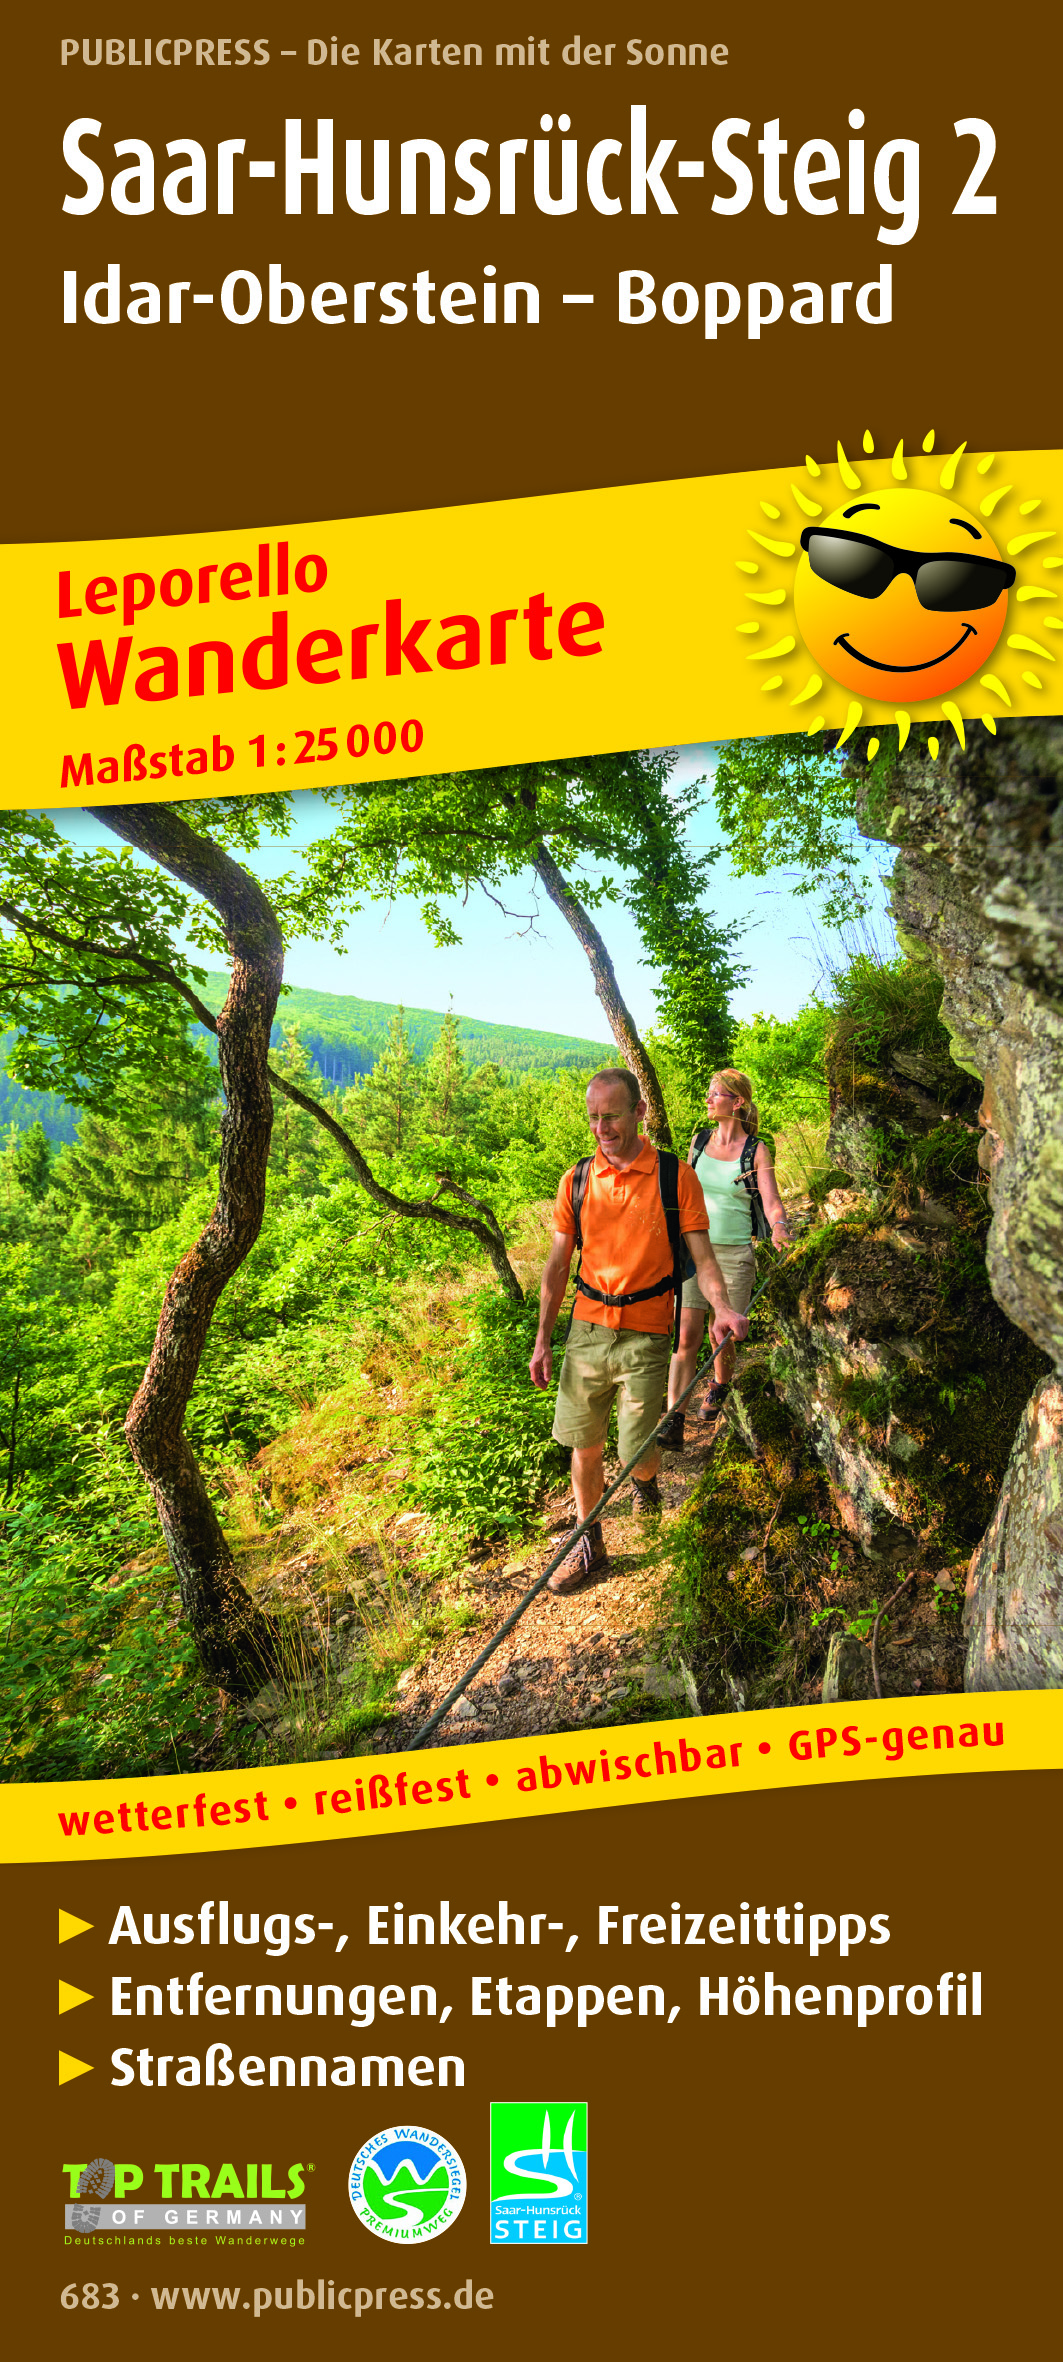 Online bestellen: Wandelkaart Saar-Hunsrück-Steig 2 | Publicpress